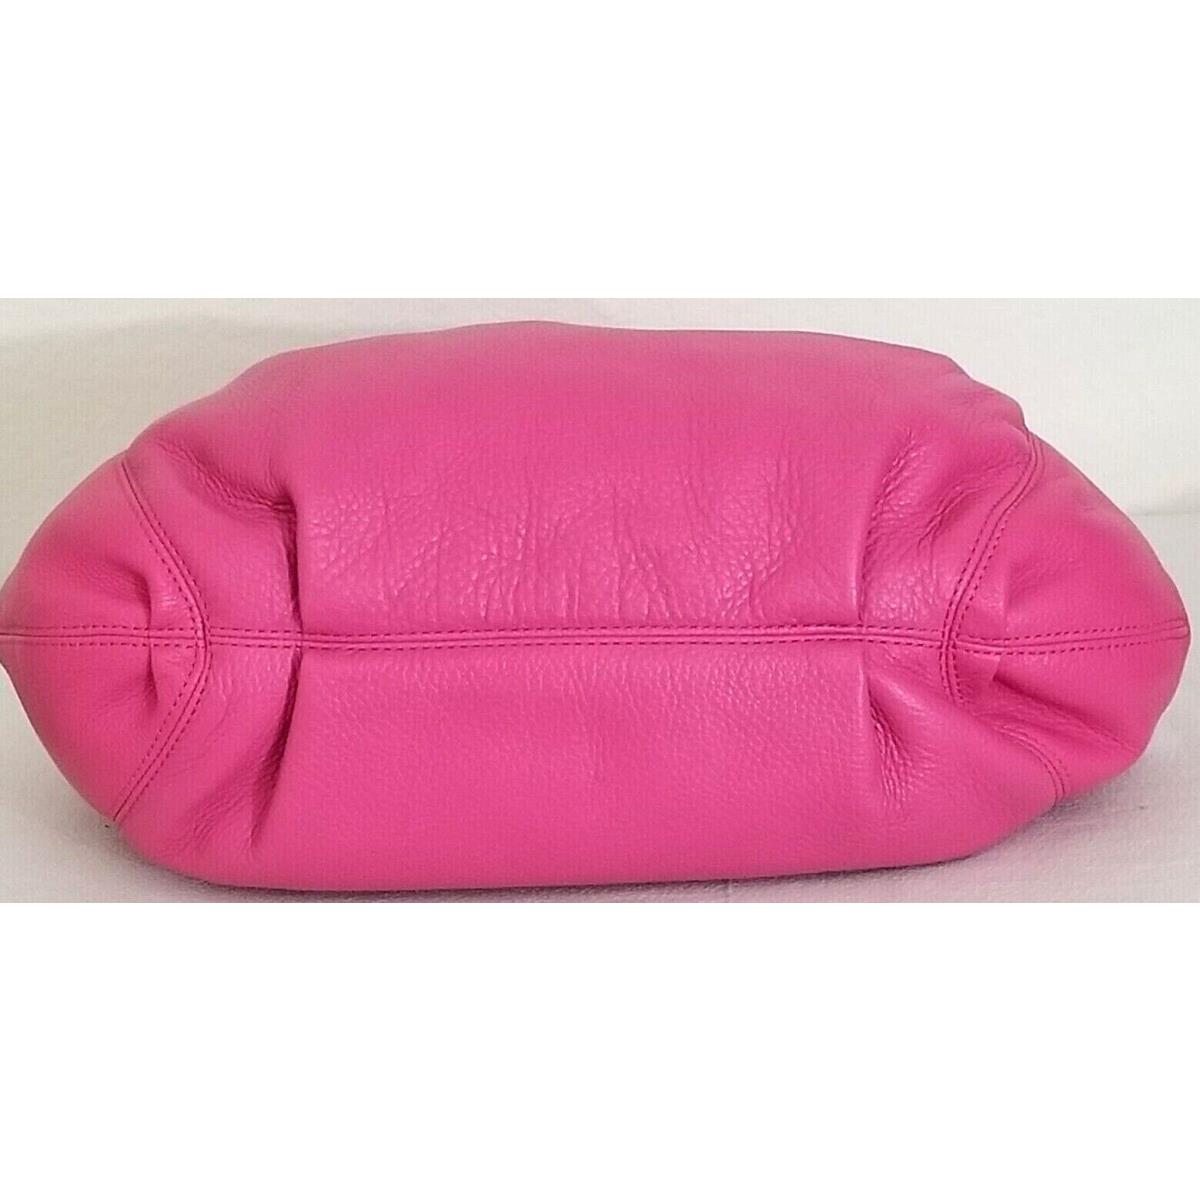 Michael Kors, Bags, Hot Pink Michael Kors Bag